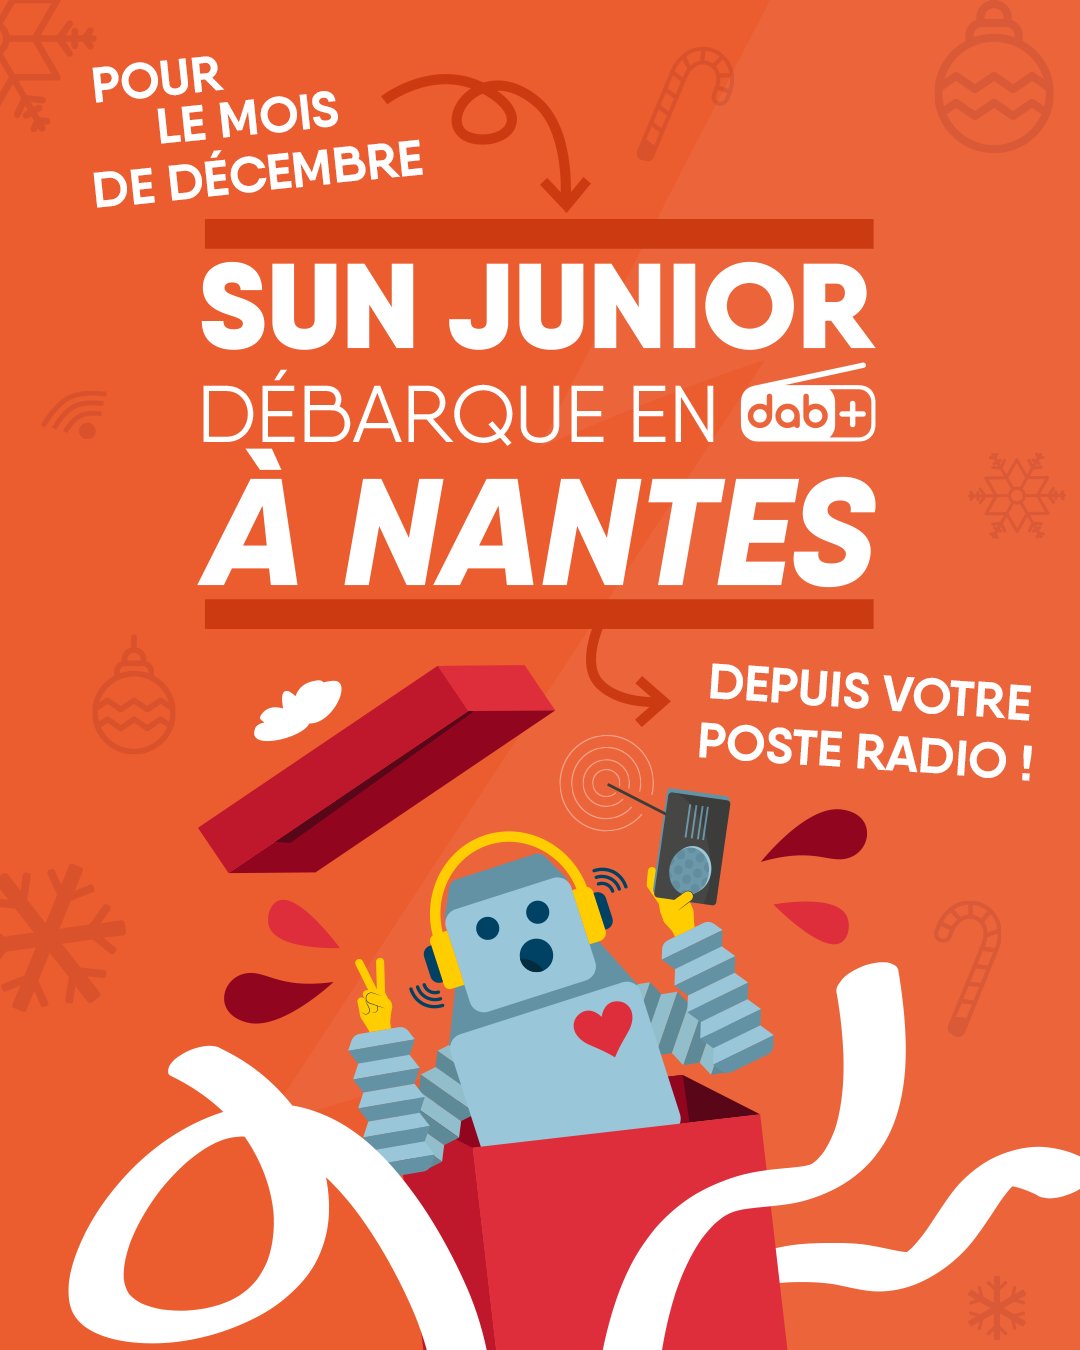 SUN Junior est de retour en DAB+ à Nantes à l’occasion des fêtes de fin d’année